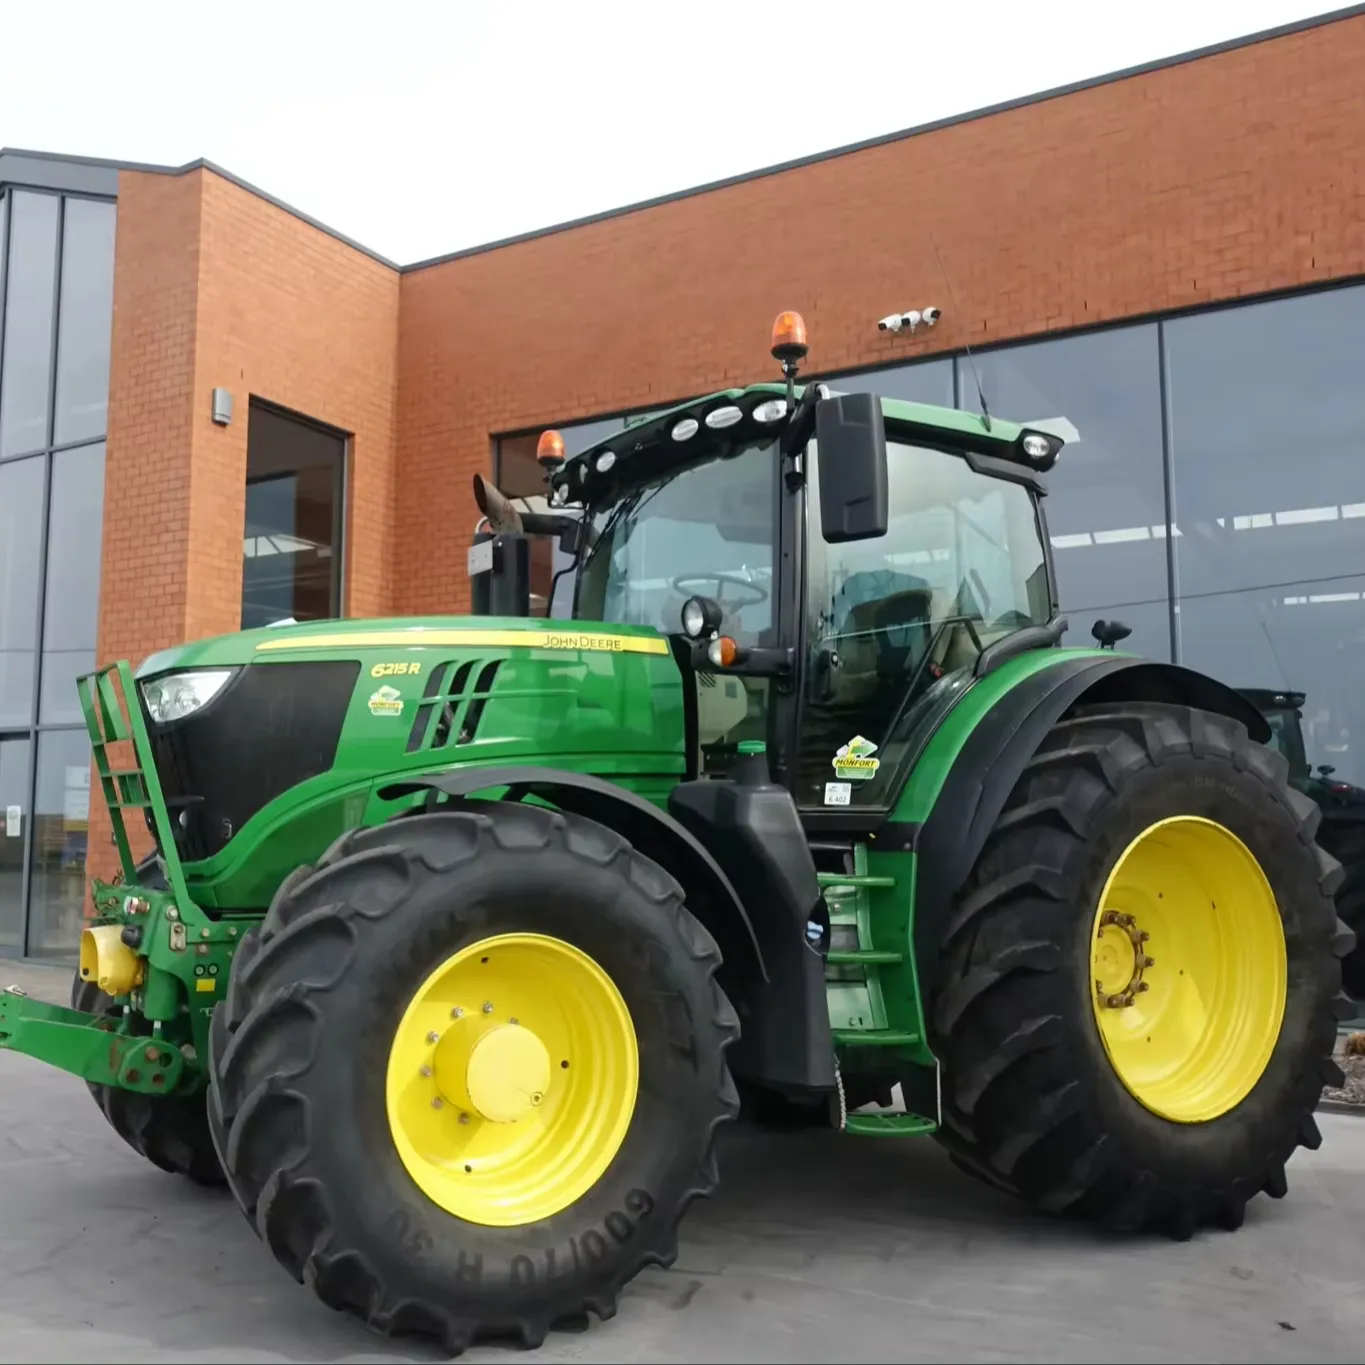 Gebrauchttraktor Landwirtschaft Second-Hand JOHNN a DEERE 1204 Traktoren 120 PS 100 PS 200 PS